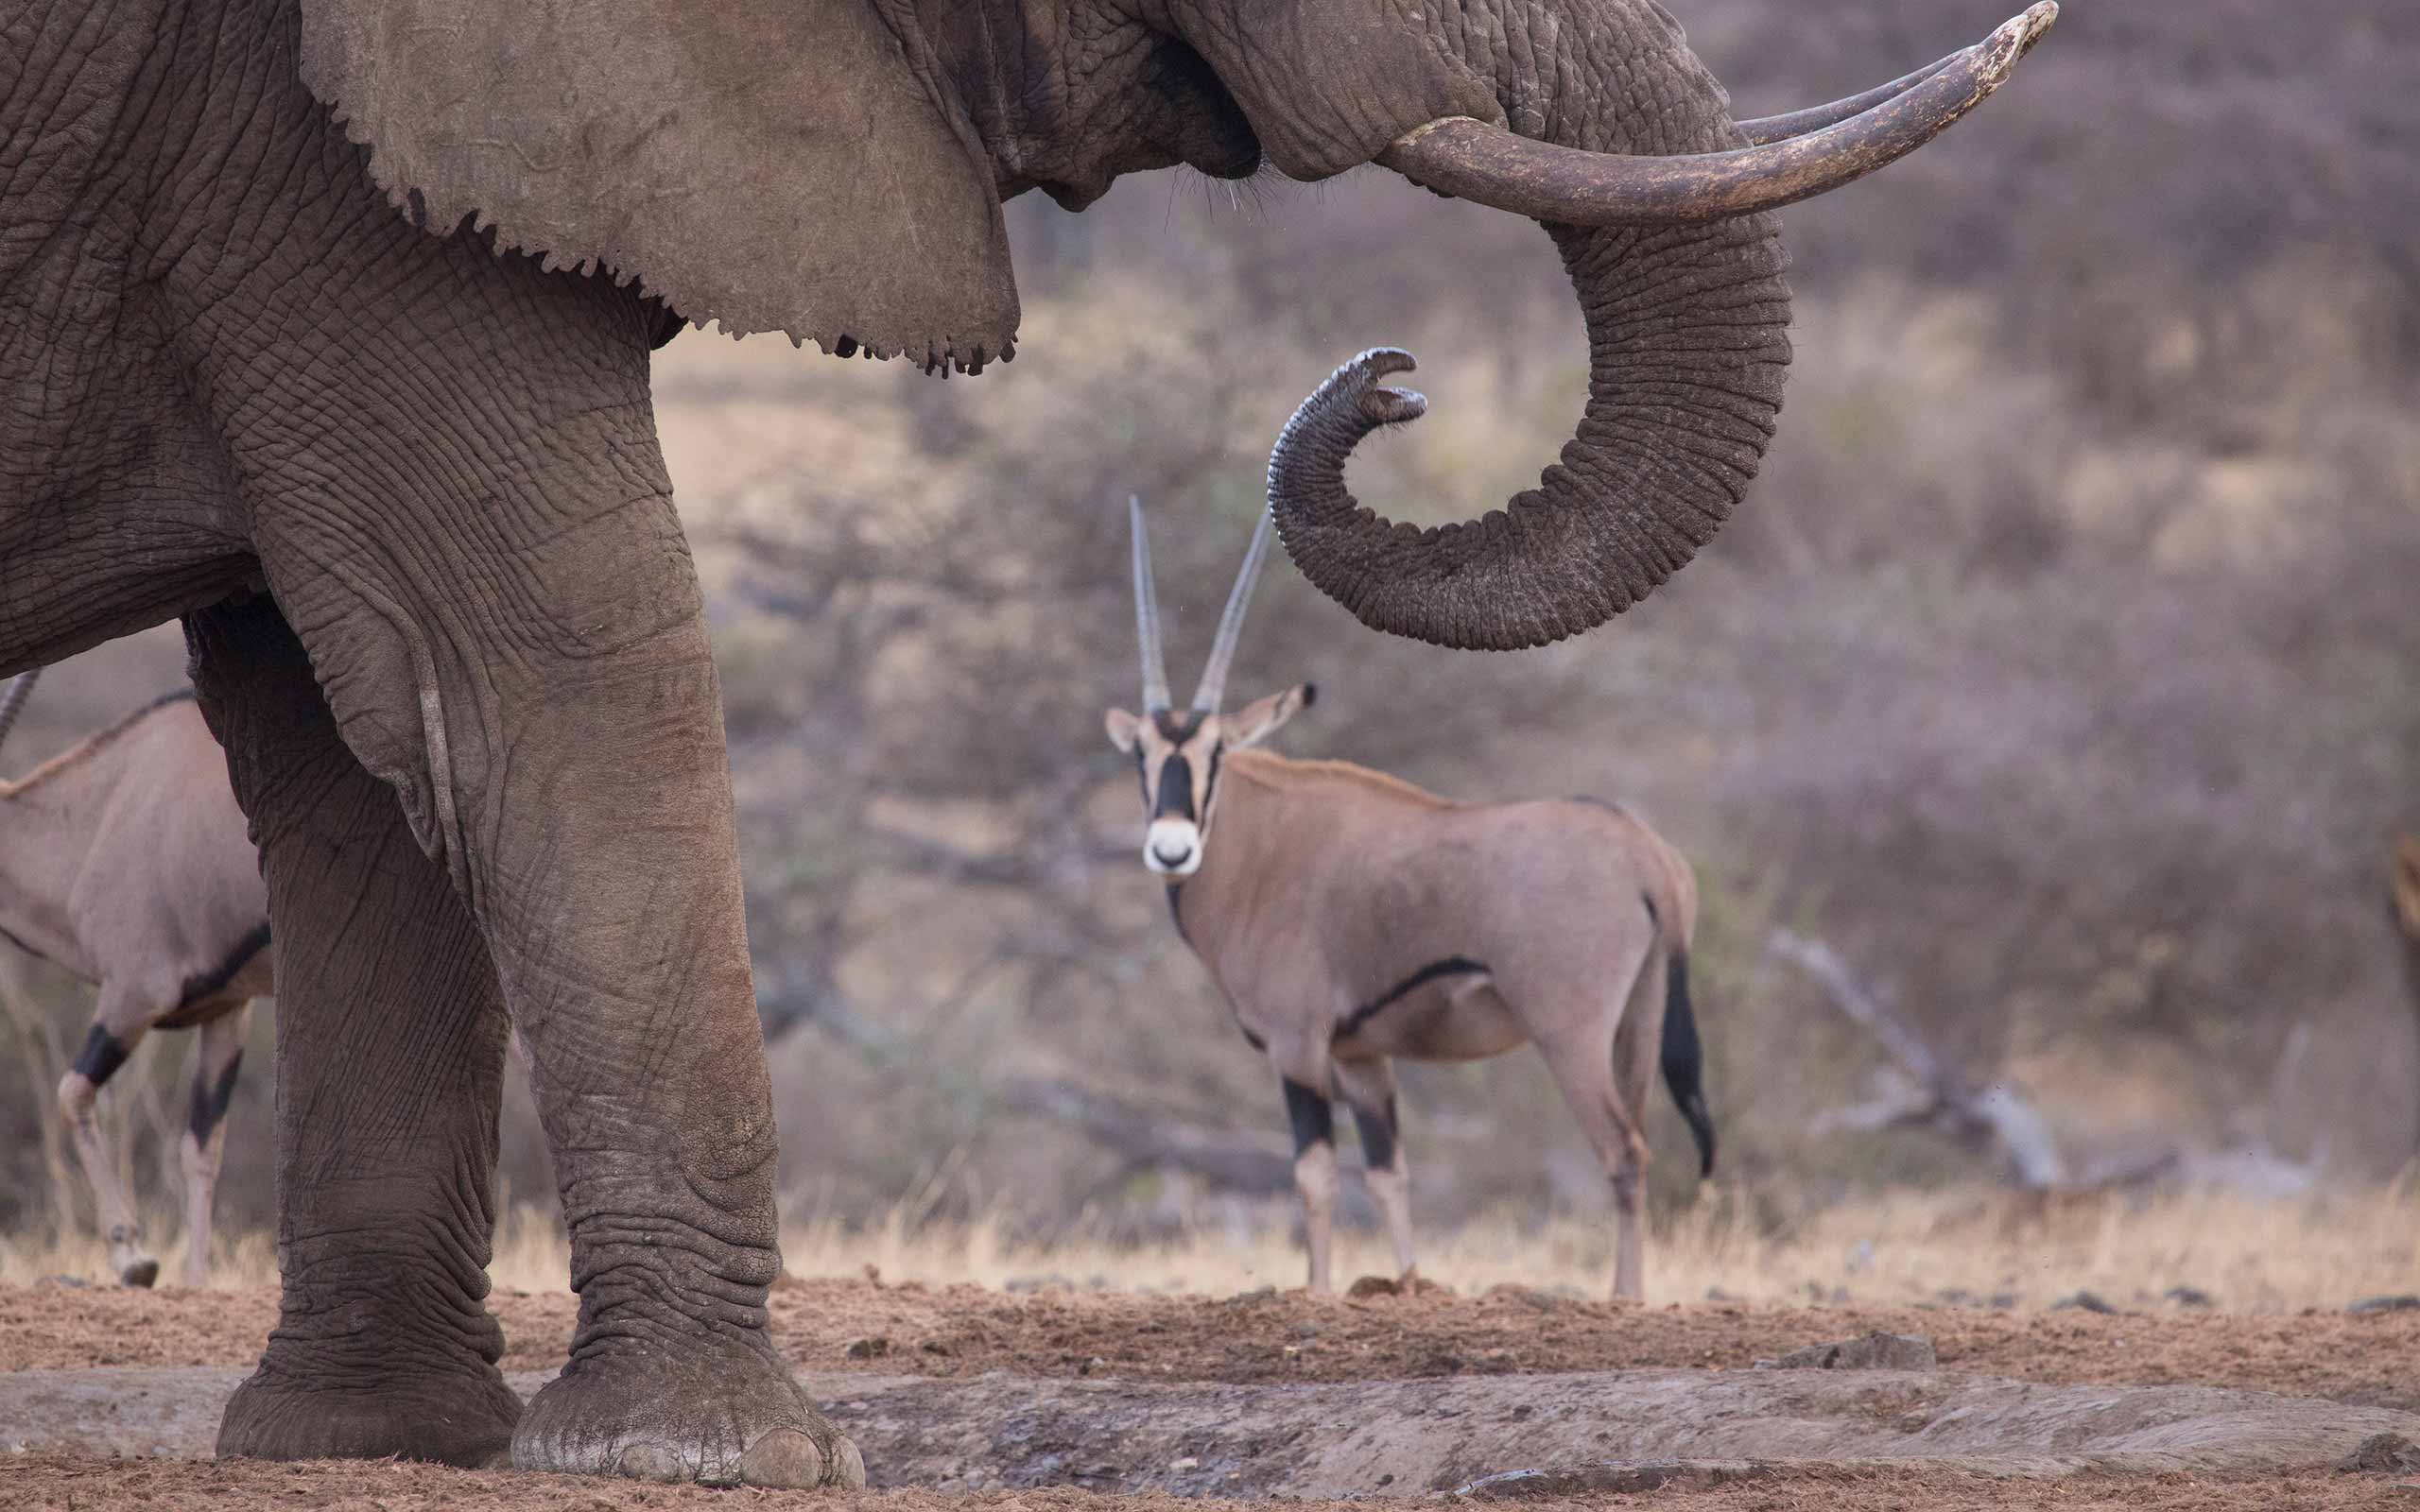 enkosi-africa-safari-kenya-chyulu-ol-donyo-lodge-great-plains-conservation-elephant